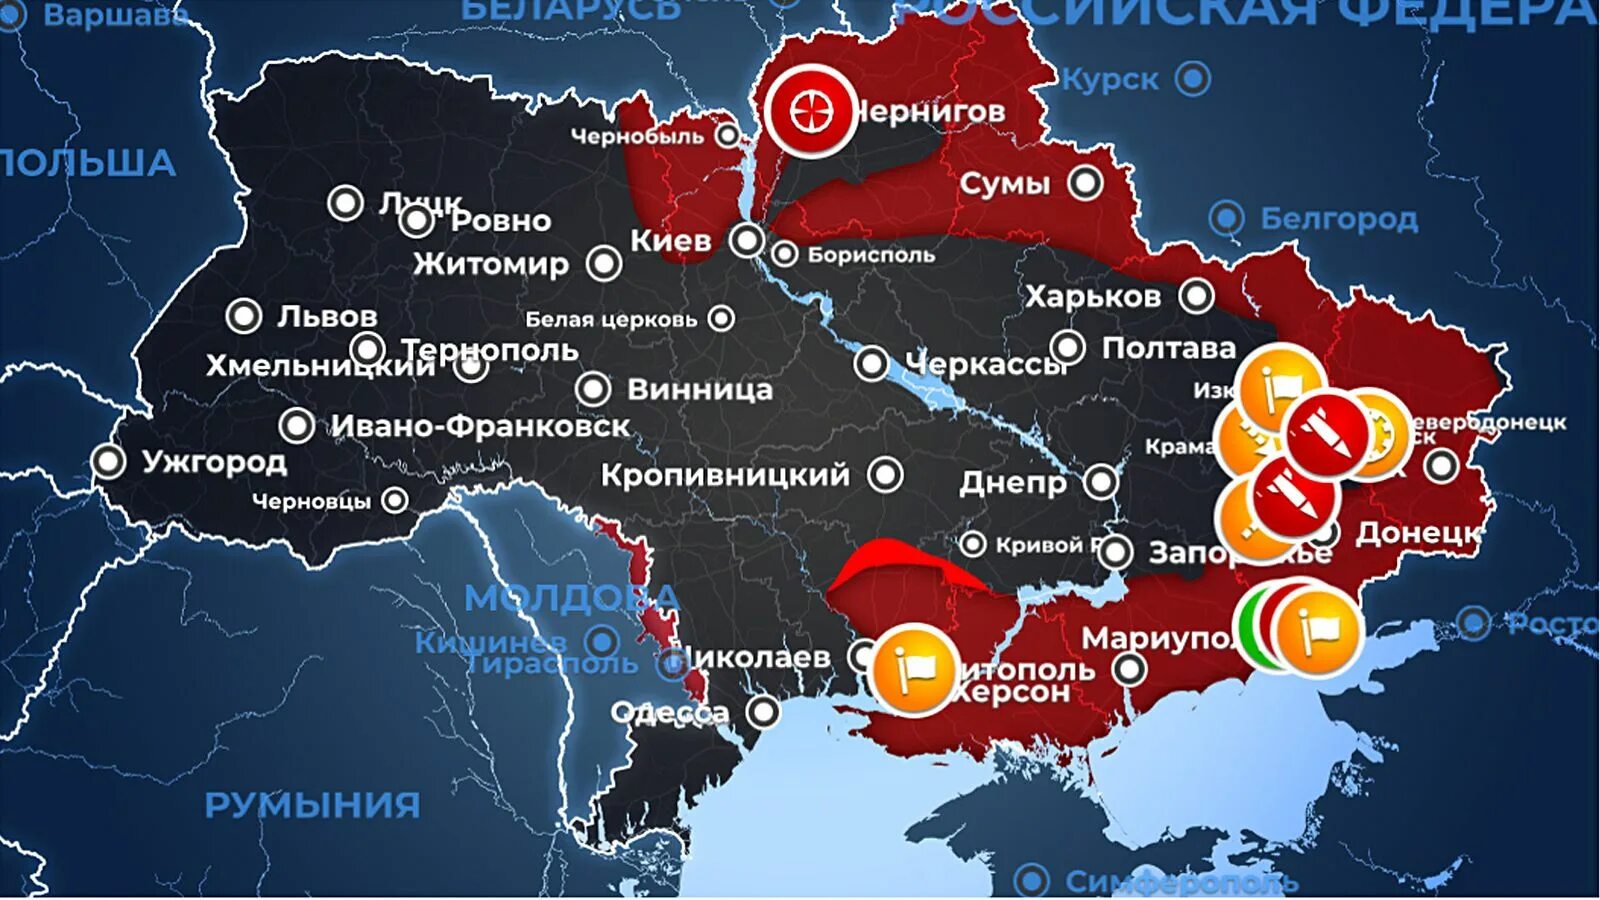 Где сейчас производится. Карта захвата территории Украины. Карта Украины боевых действий Украина 2022. Военная карта Украины на 26 марта. Карта захвата Украины 2022.